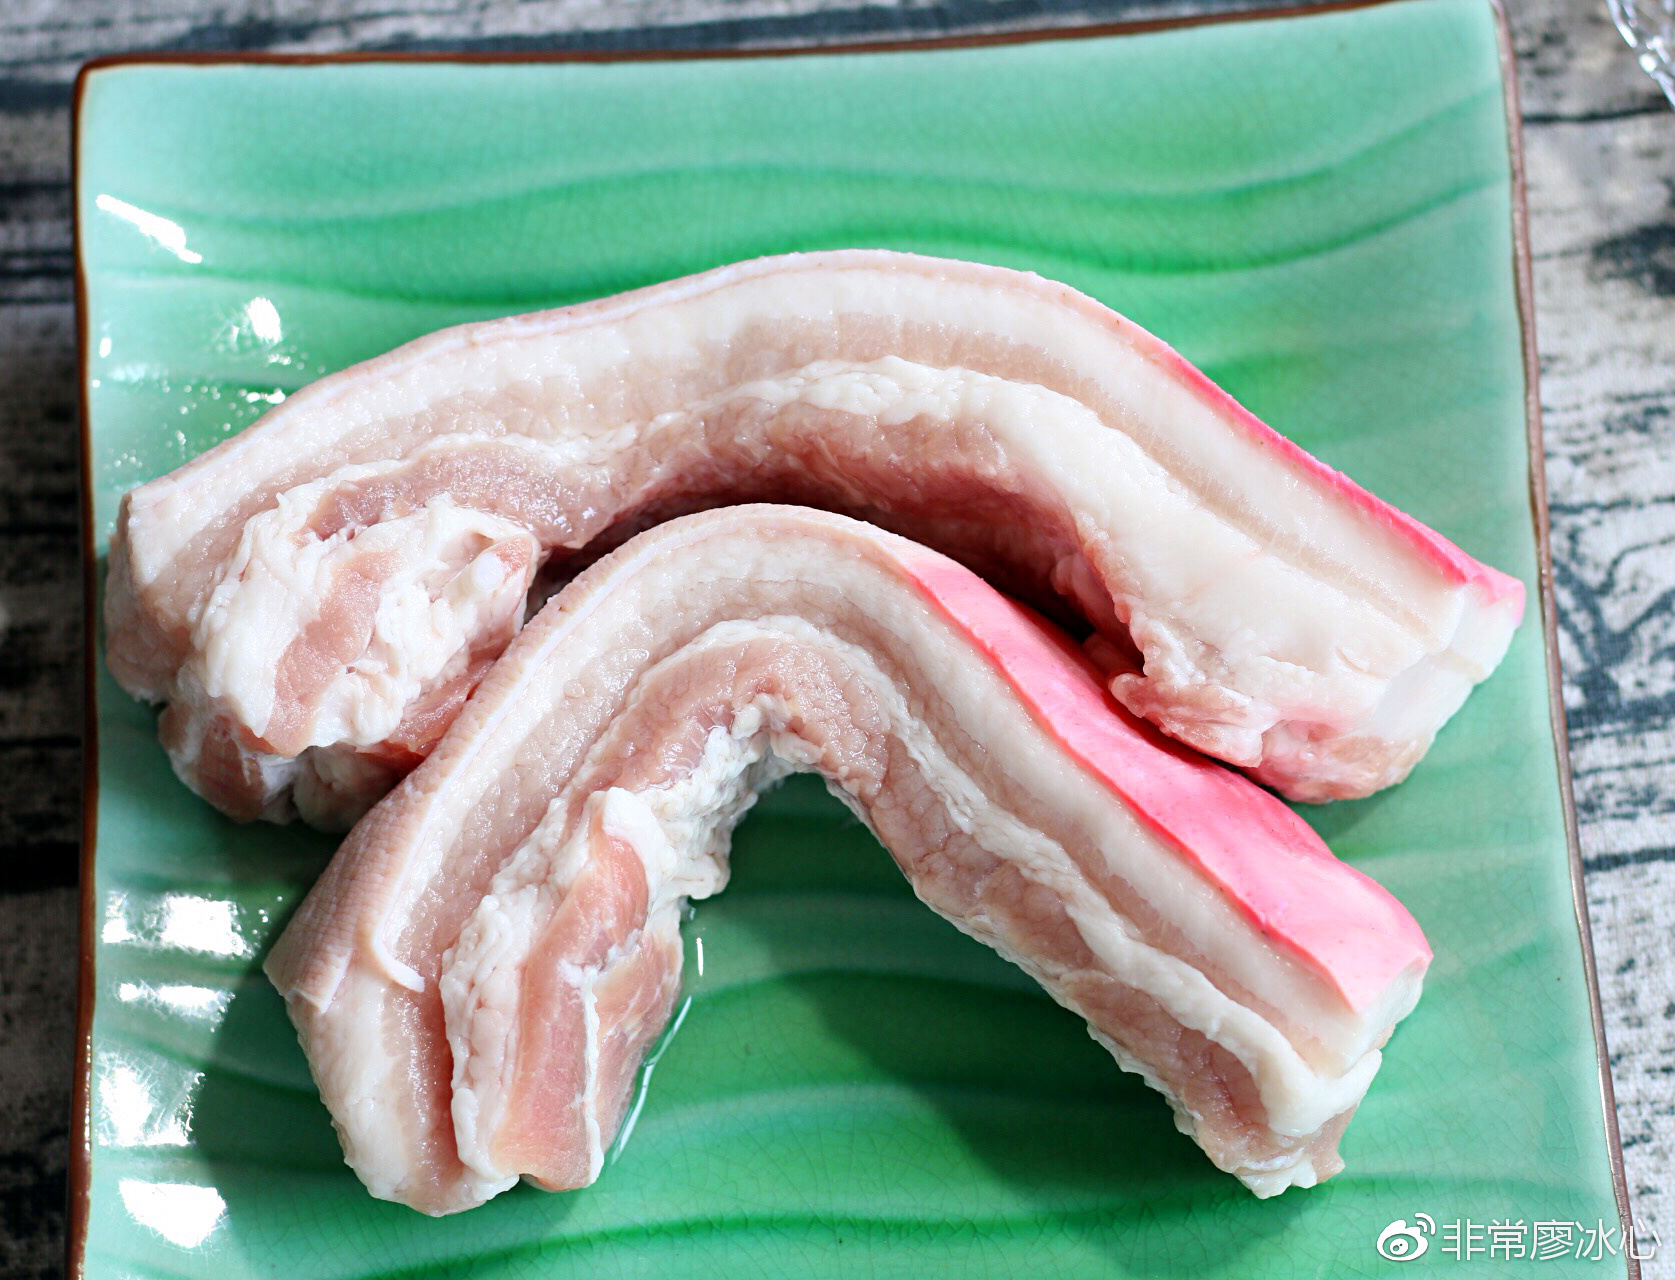 三层肉(五花肉)食材川味回锅肉制作流程回锅肉是一种烹调猪肉的四川